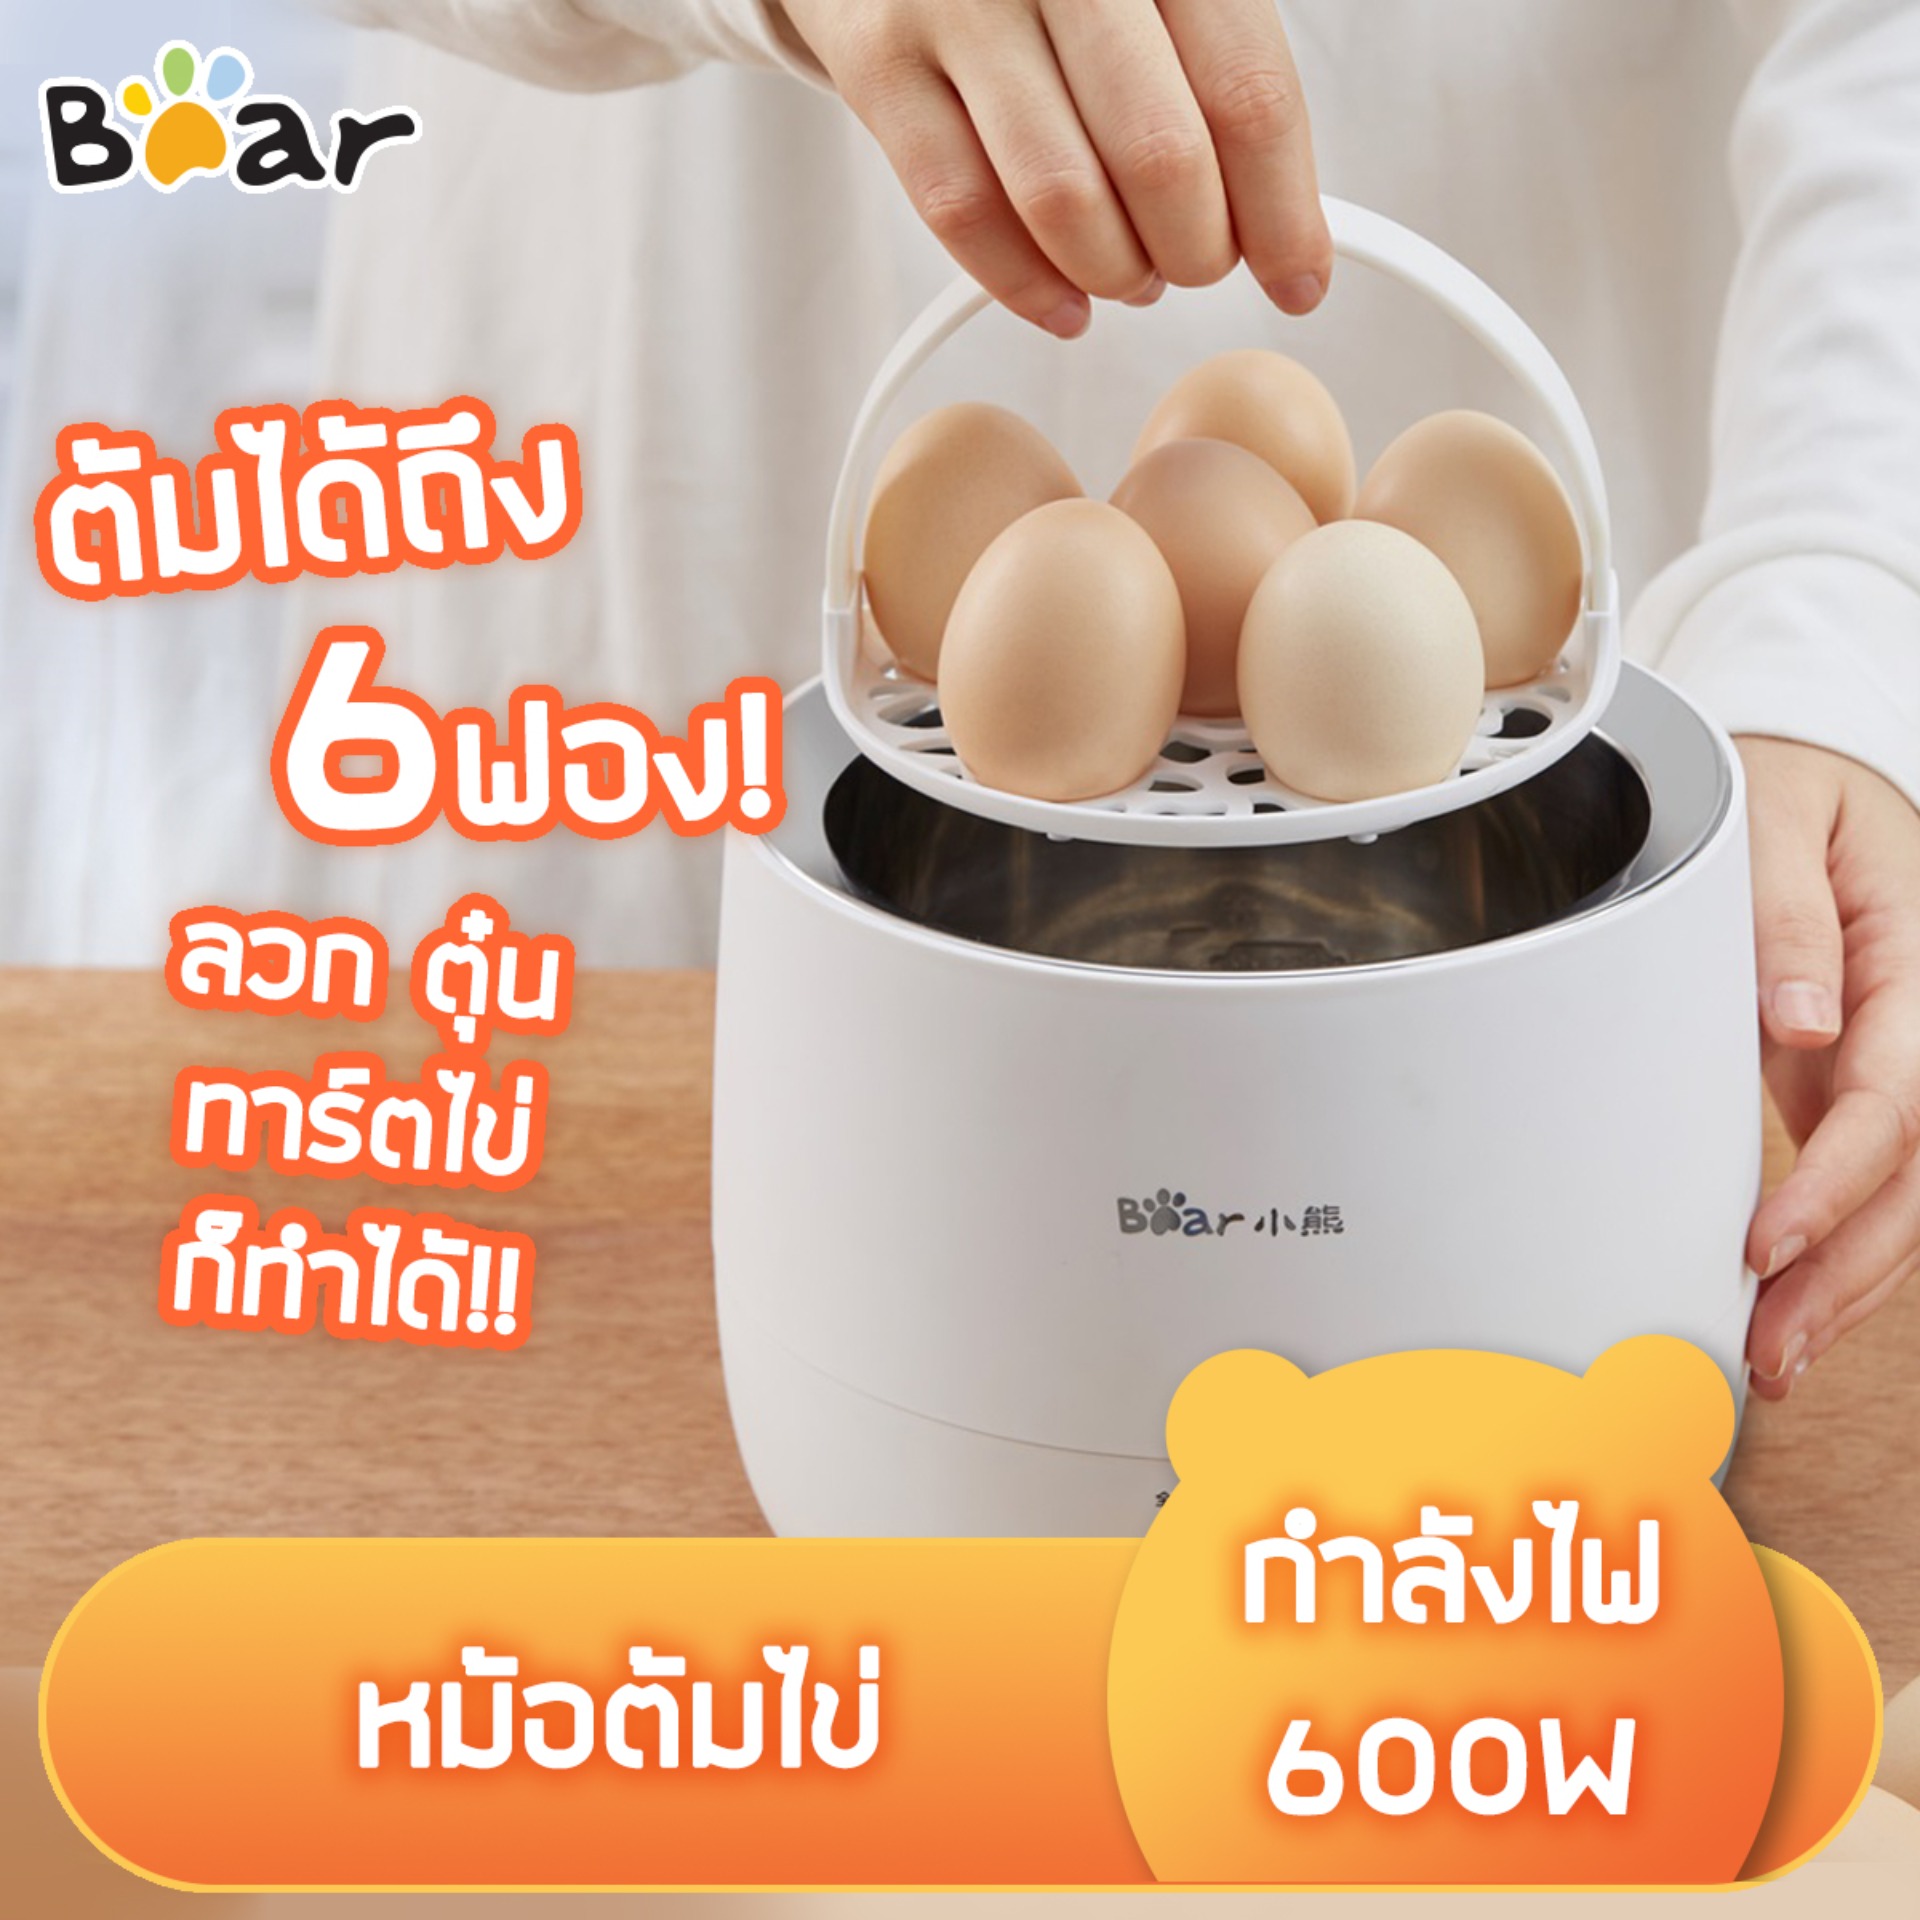 เครื่องลวกไข่ เลือกความสุขได้ ใช้งานสะดวก เสร็จใน 5 นาที หม้อต้มไข่ เครื่องต้มไข่ เครื่องนึ่งไข่ หม้อตุ๋น หม้อตุ๋นไฟฟ้า เครื่องต้มไข่ไฟฟ้า Egg Boiler มีรับประกัน บรรจุไข่ได้สูงสุด 6 ฟอง